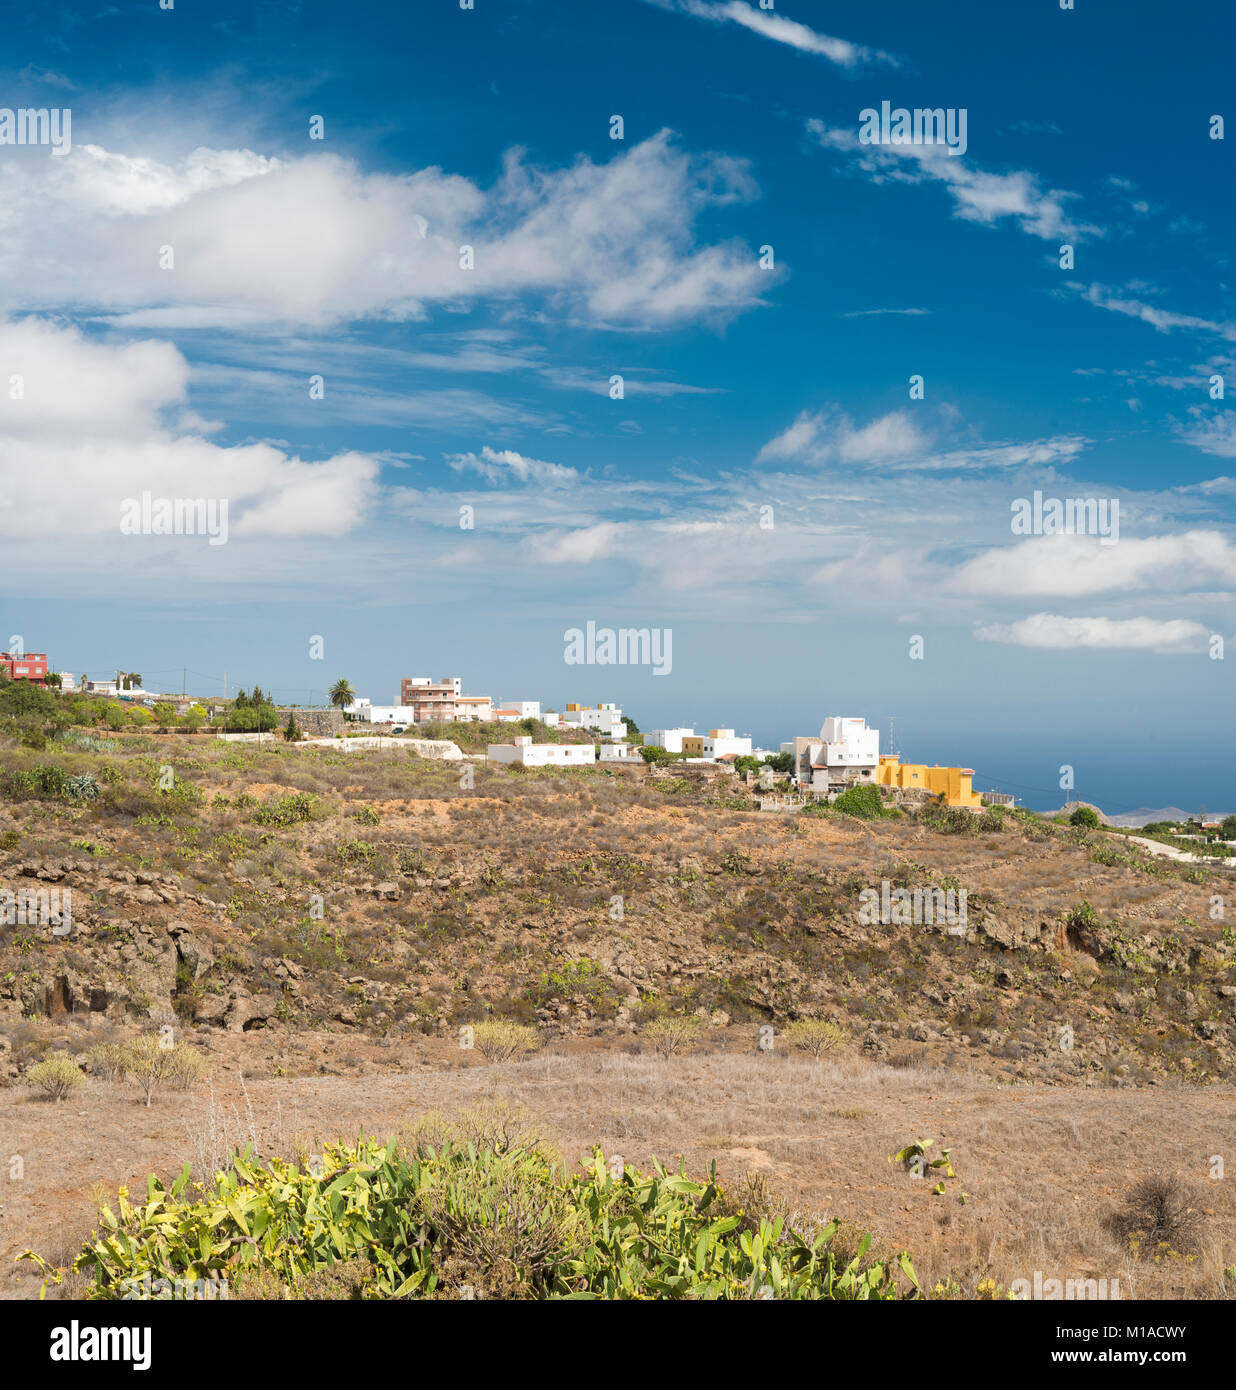 La ciudad de Arona vistos desde un sendero en el Barranco del Ancón, Tenerife, Islas Canarias, España Foto de stock